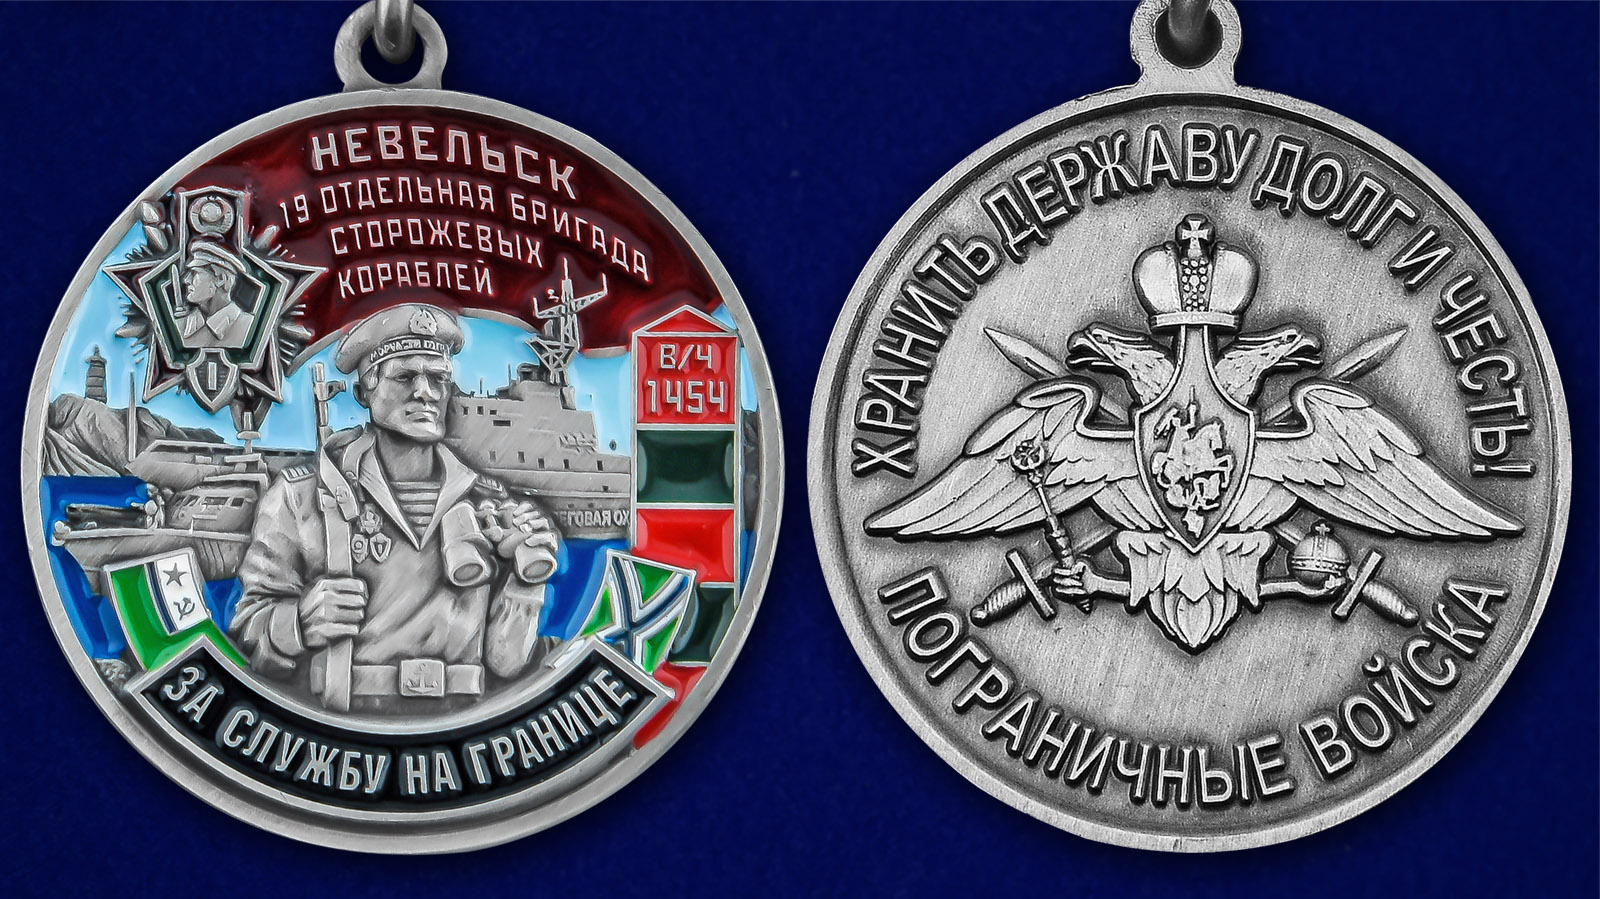 Описание медали "За службу в 19-ой ОБрПСКР Невельск" - аверс и реверс